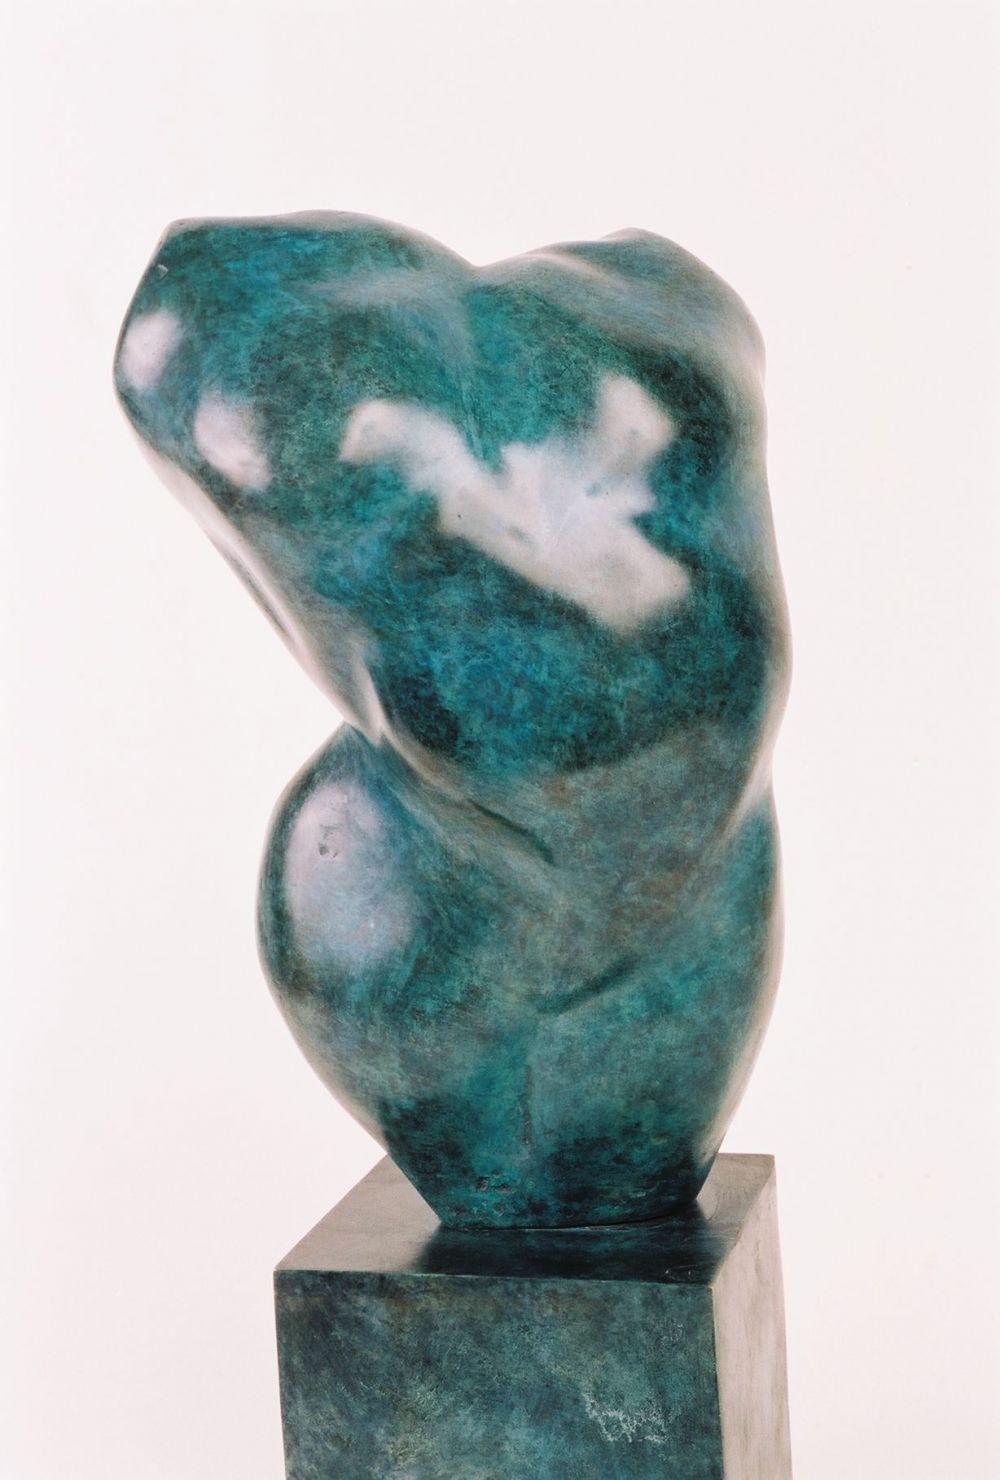 Belli est une sculpture en bronze de l'artiste contemporain français Yann Guillon, dont les dimensions sont de 30 × 20 × 20 cm (11,8 × 7,9 × 7,9 in).  
Cette sculpture est signée et numérotée, elle fait partie d'une édition limitée à 8 exemplaires +